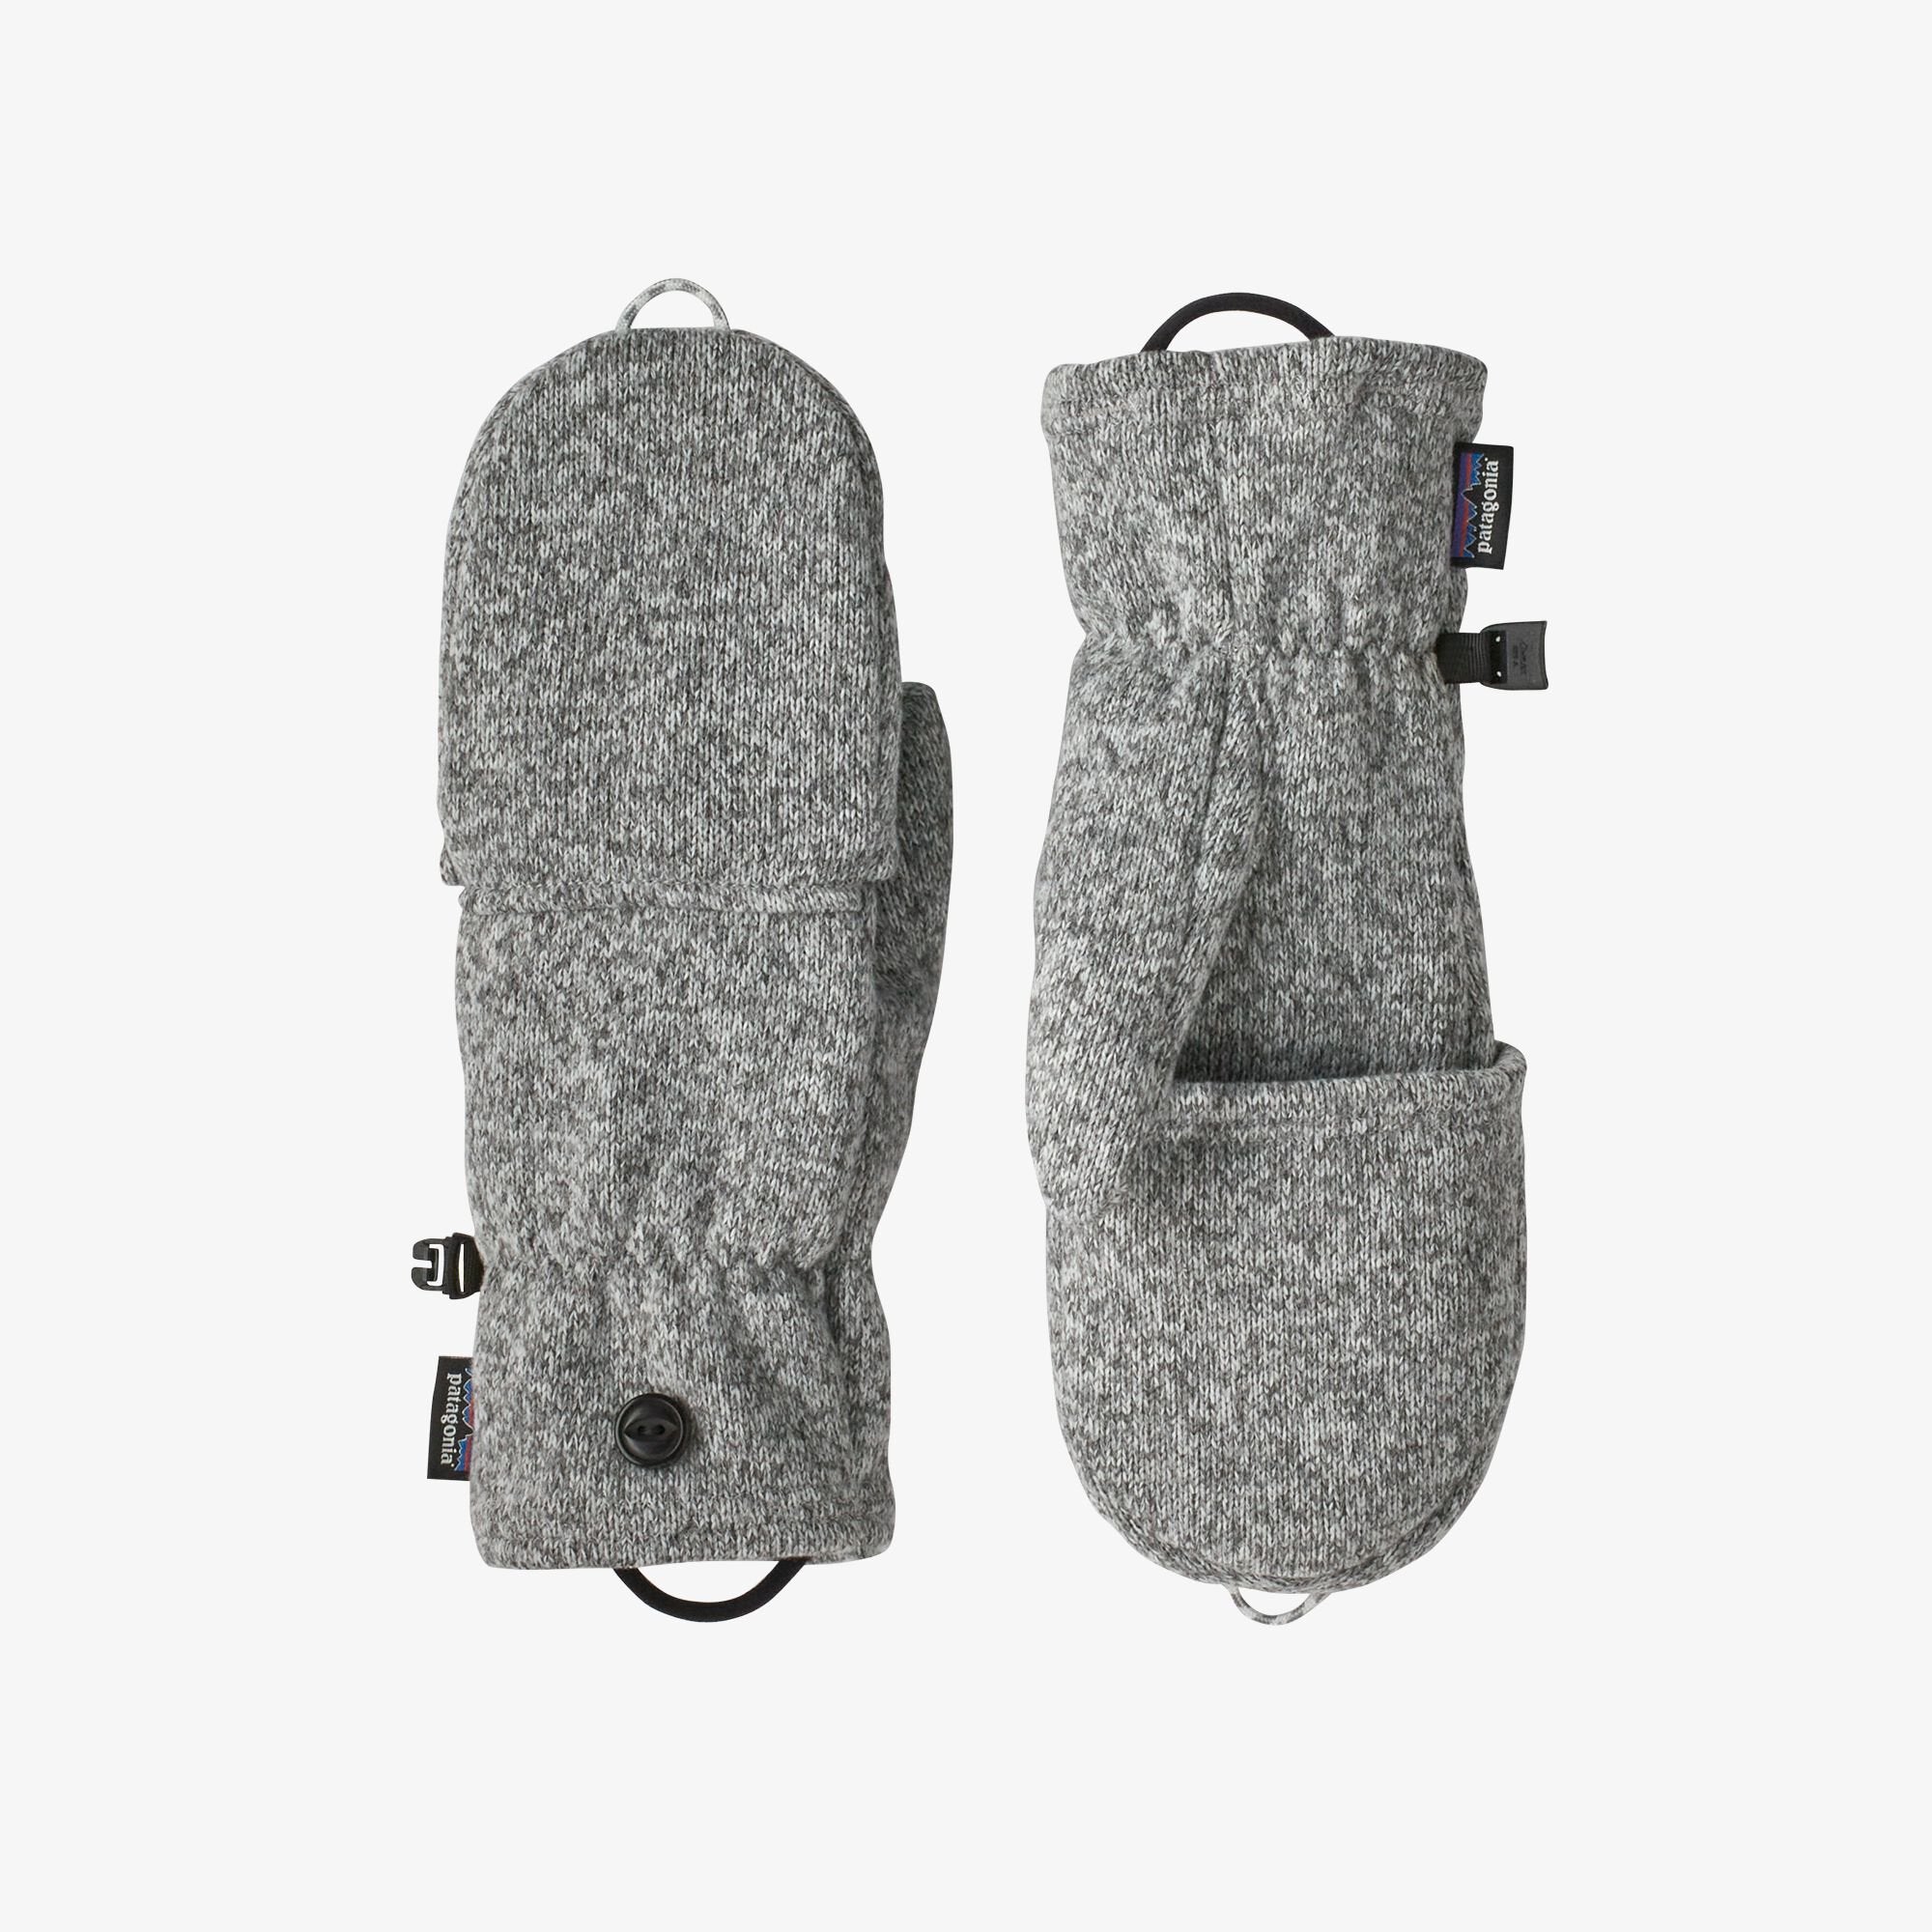 pair of mittens